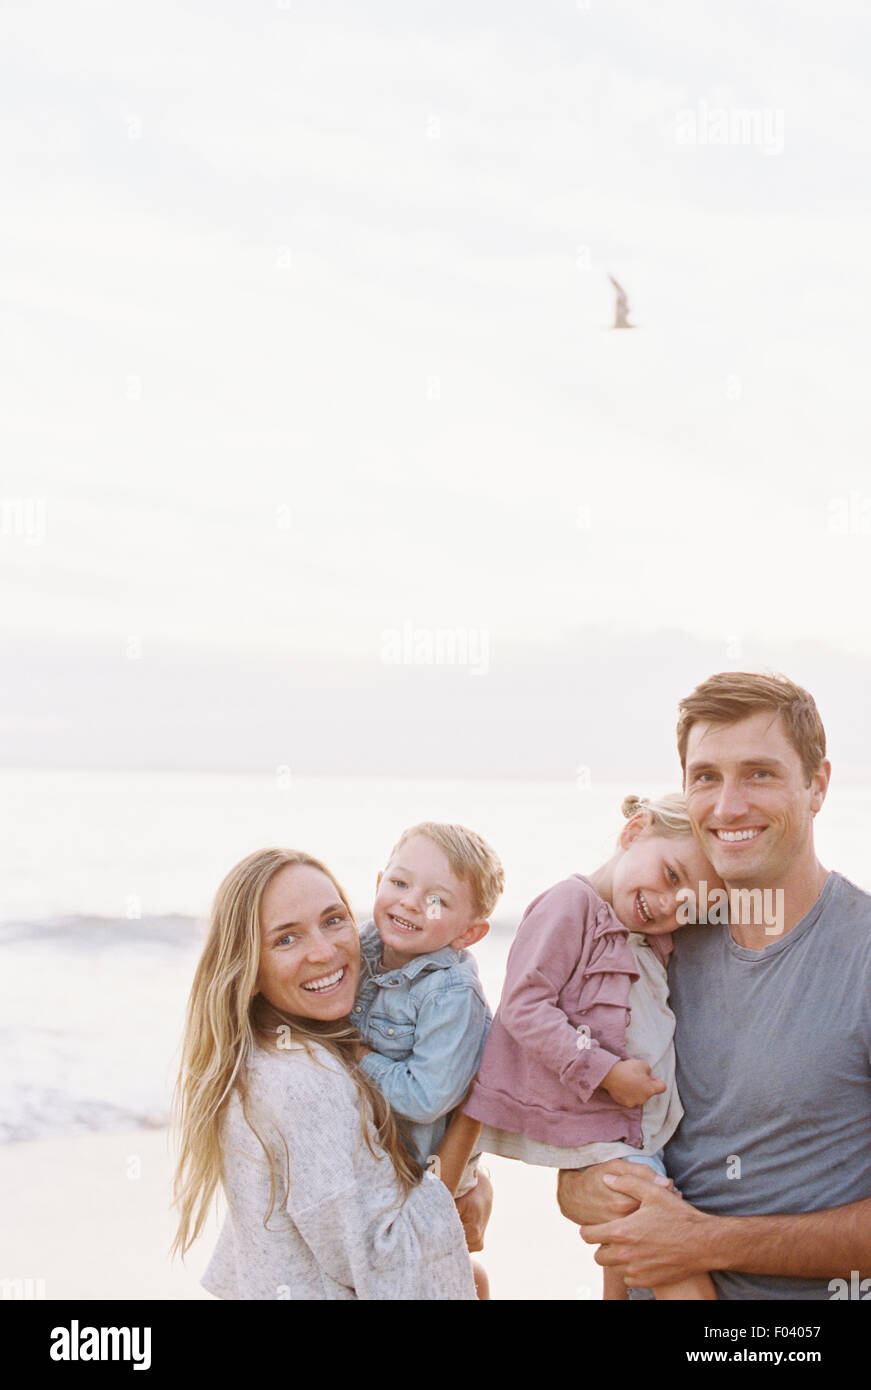 Par de pie con su hijo e hija en una playa de arena a la orilla del mar, mirando a la cámara, sonriendo. Foto de stock